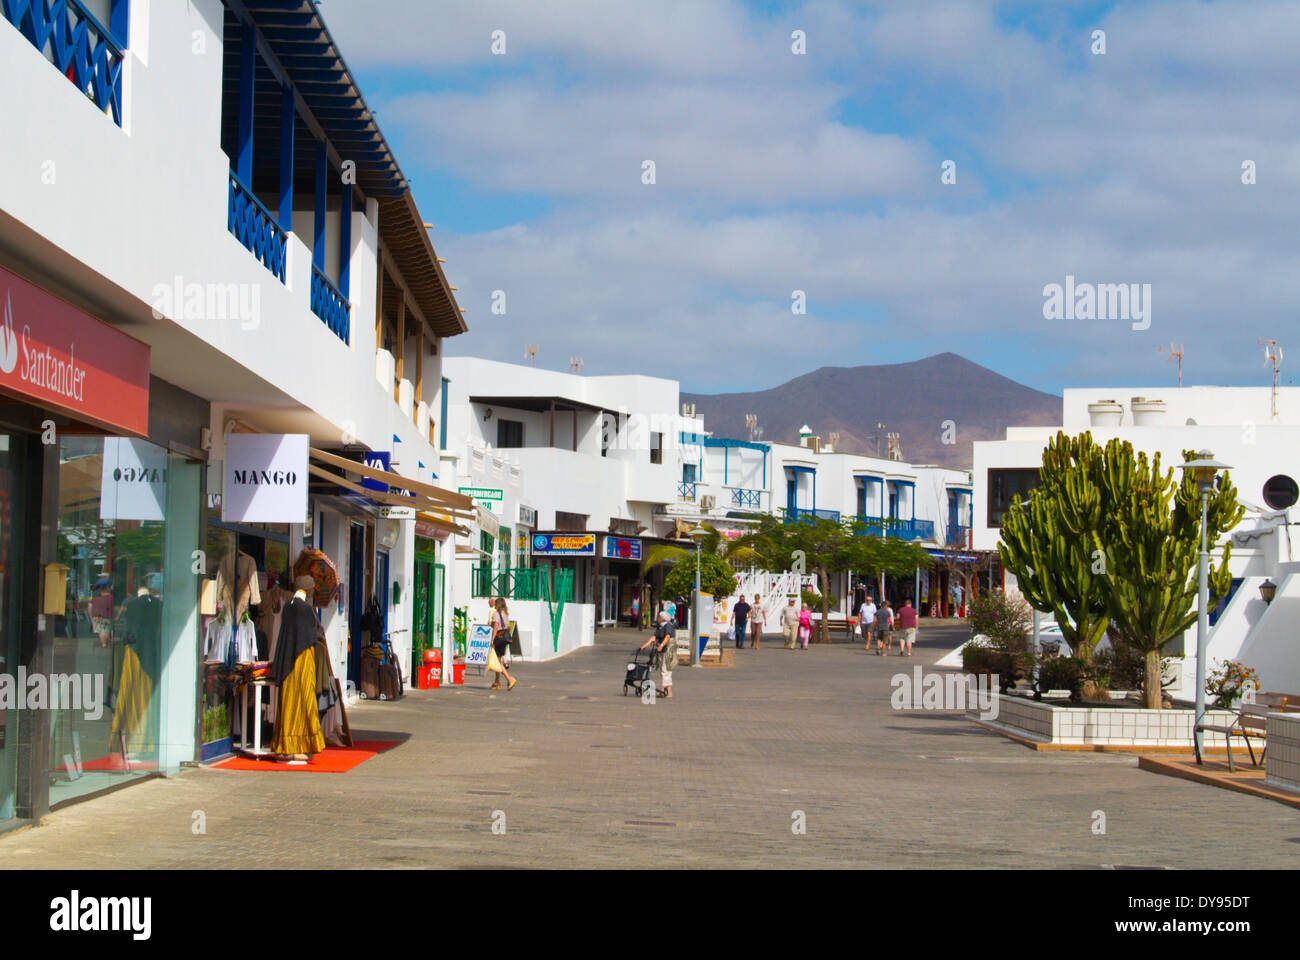 La rue Calle Limones, Playa Blanca, Lanzarote, Canary Islands, Spain, Europe Banque D'Images